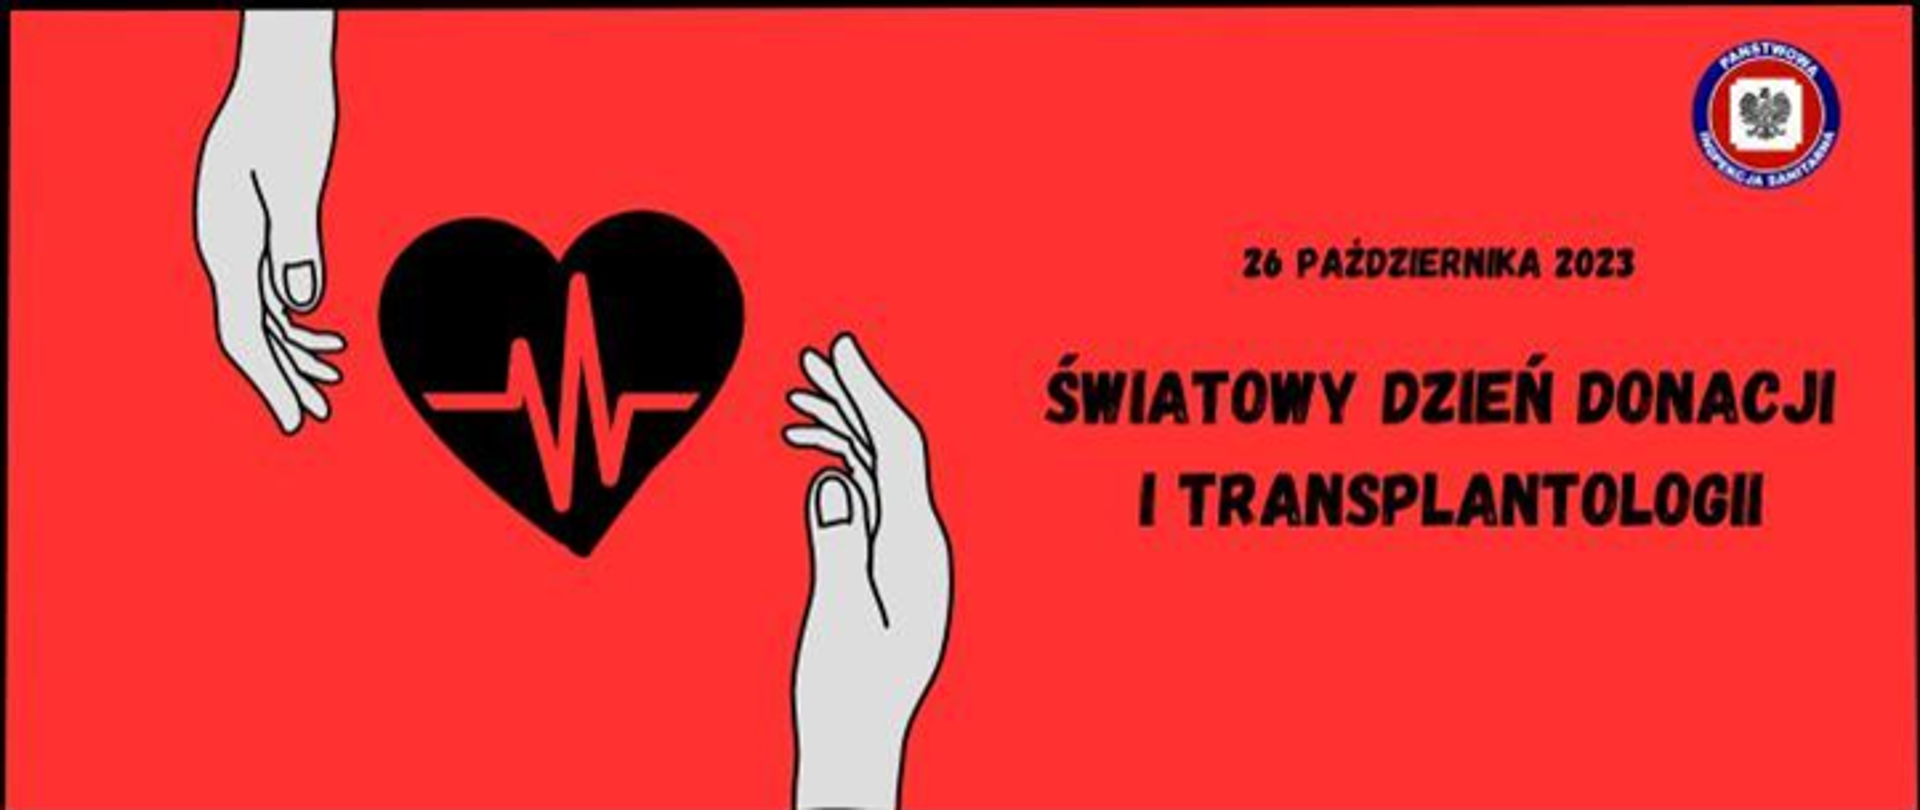 Światowy Dzień Donacji i Transplantologii